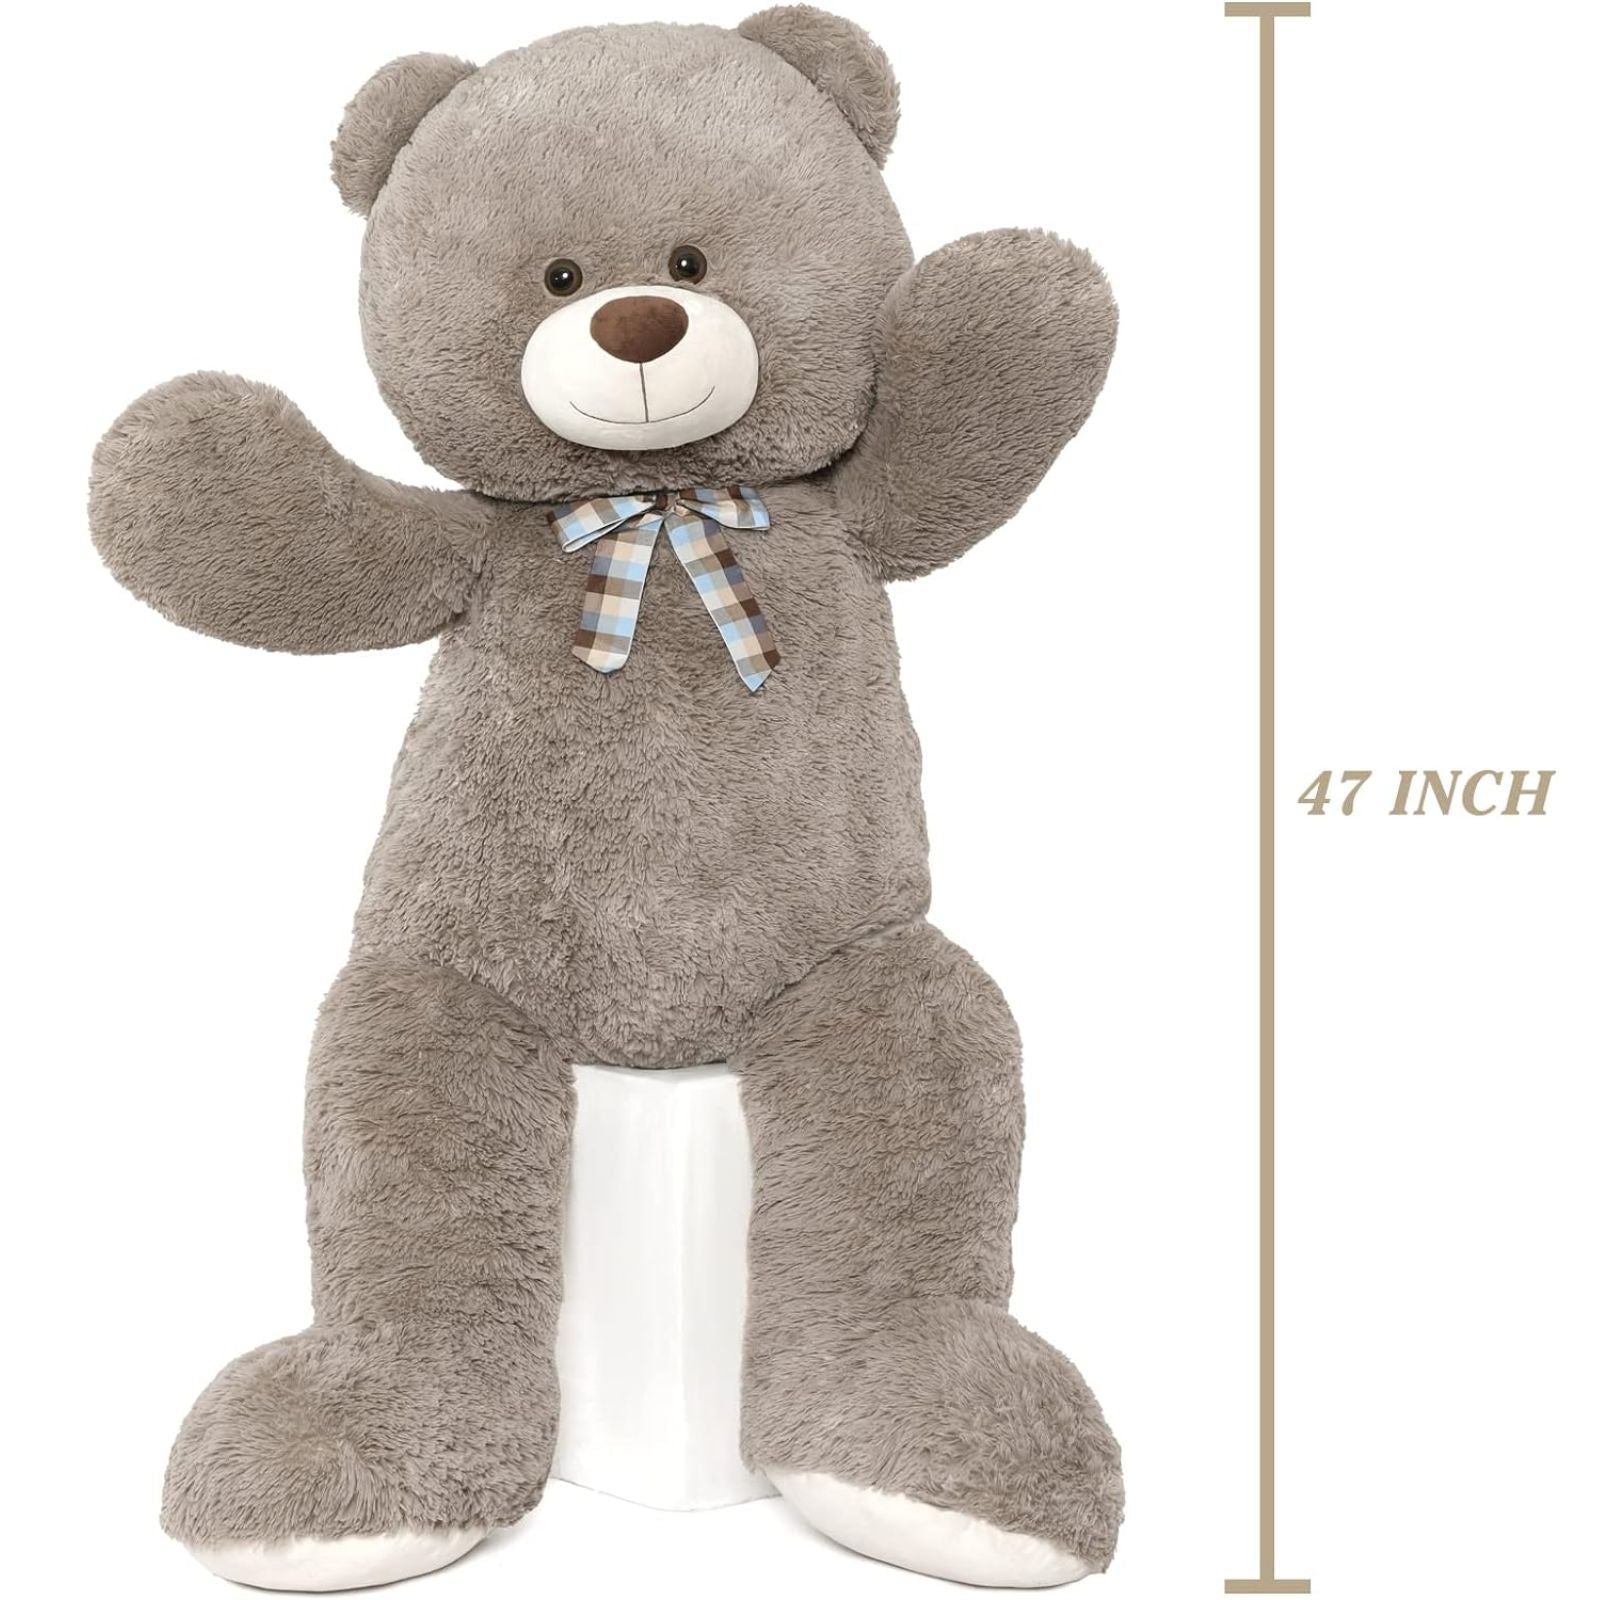 Big Teddy Bear Soft Toy, 47 Inches